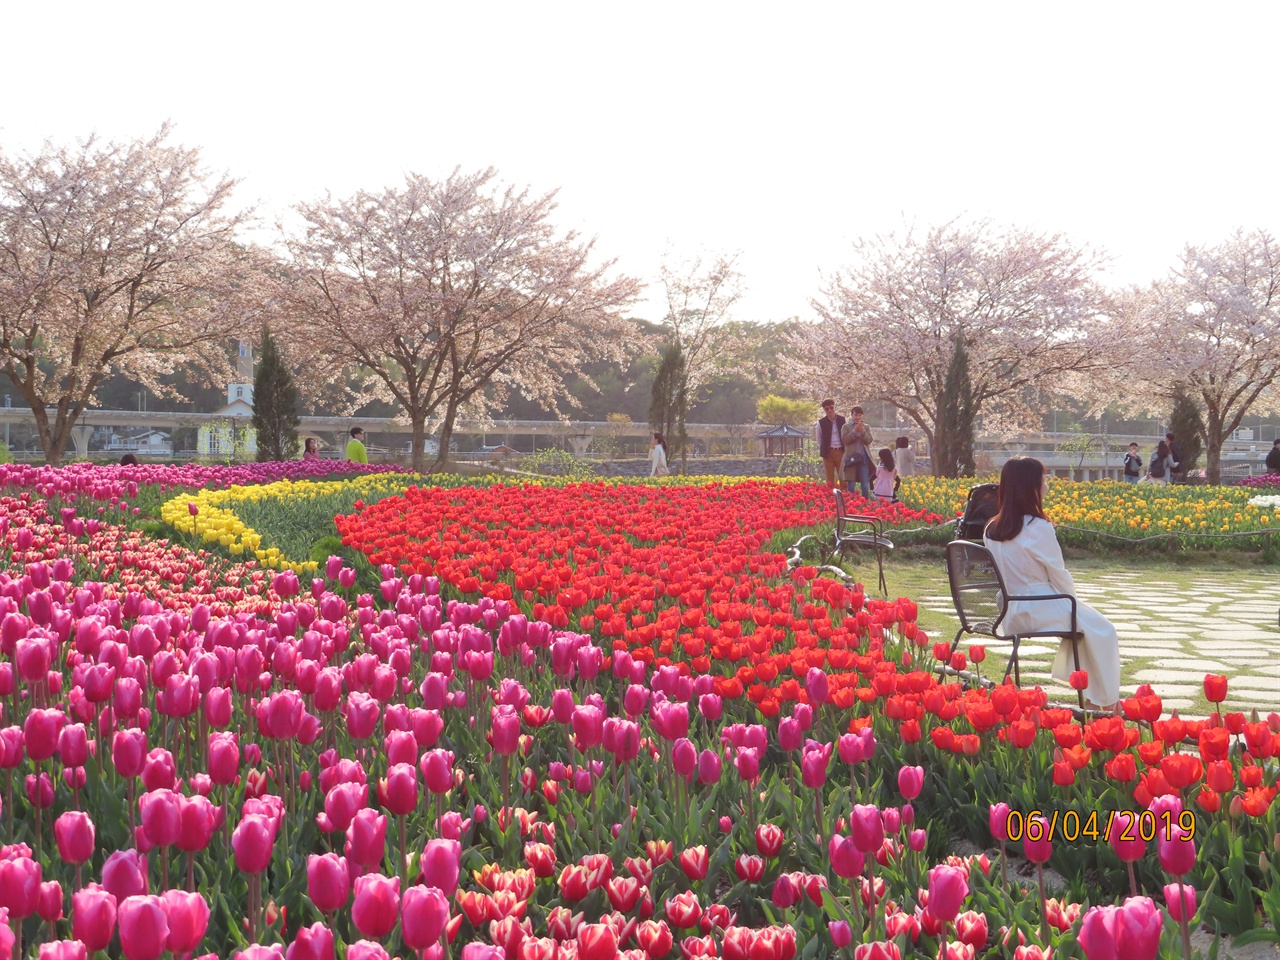 국가정원에 있는 네덜란드정원에서 튤립과 동천의 벚꽃길을 배경으로 어느 관광객이 사진을 찍기 위해 의자에 앉아있다.